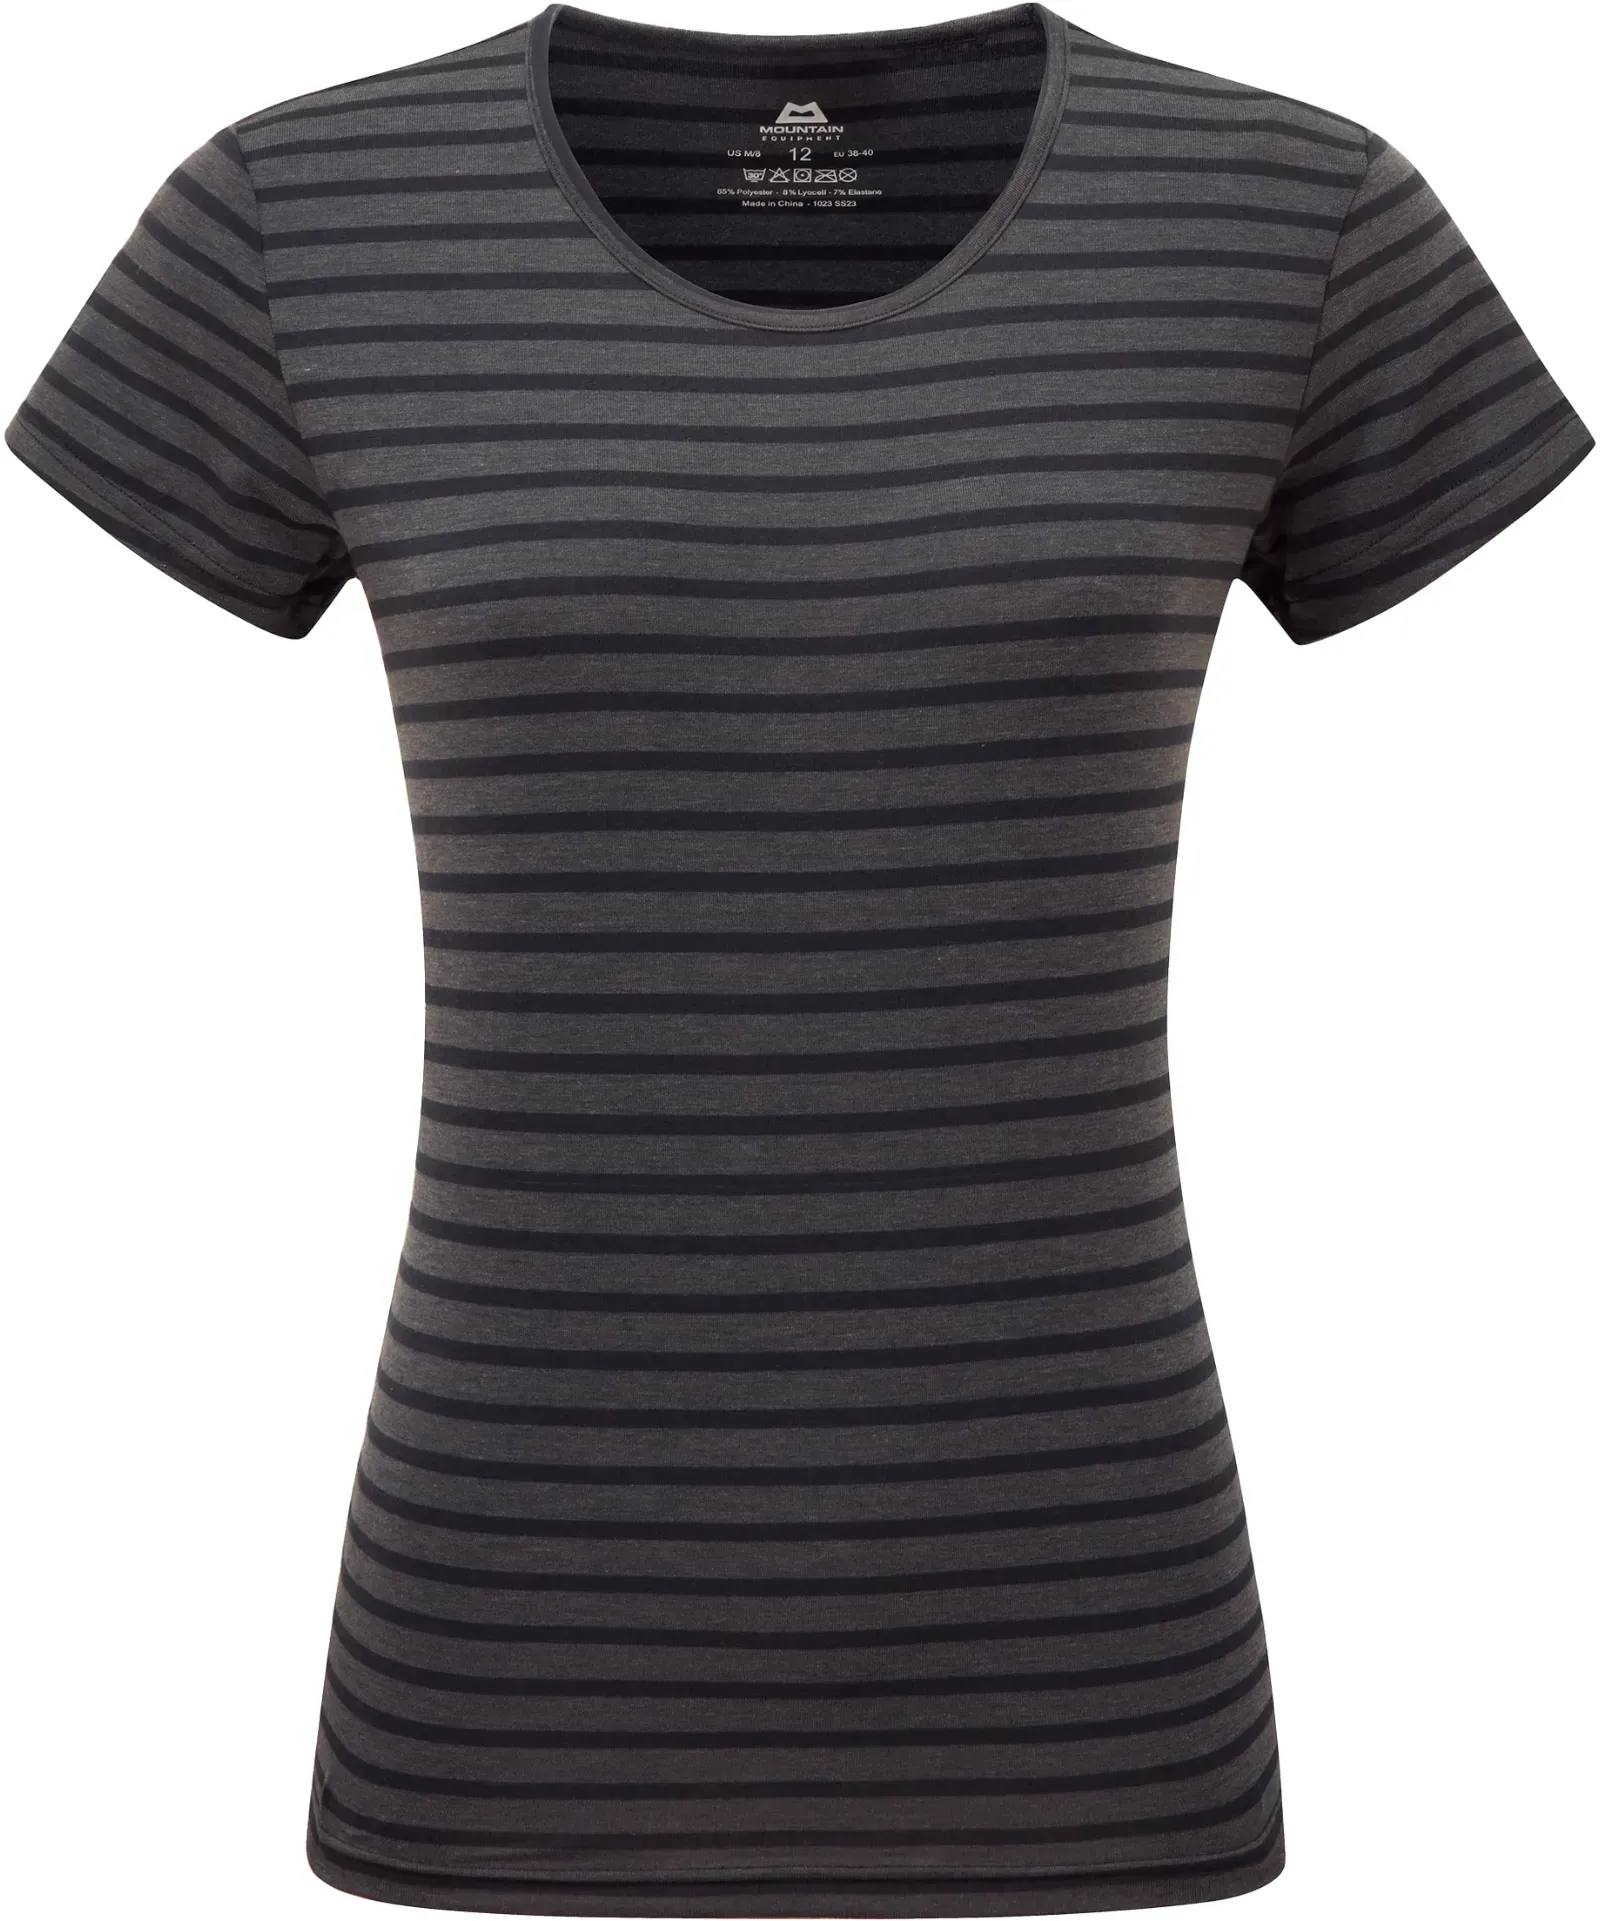 Mountain Equipment Groundup Stripe Women's Tee - Damen T-Shirt - Cosmos stripe - 14